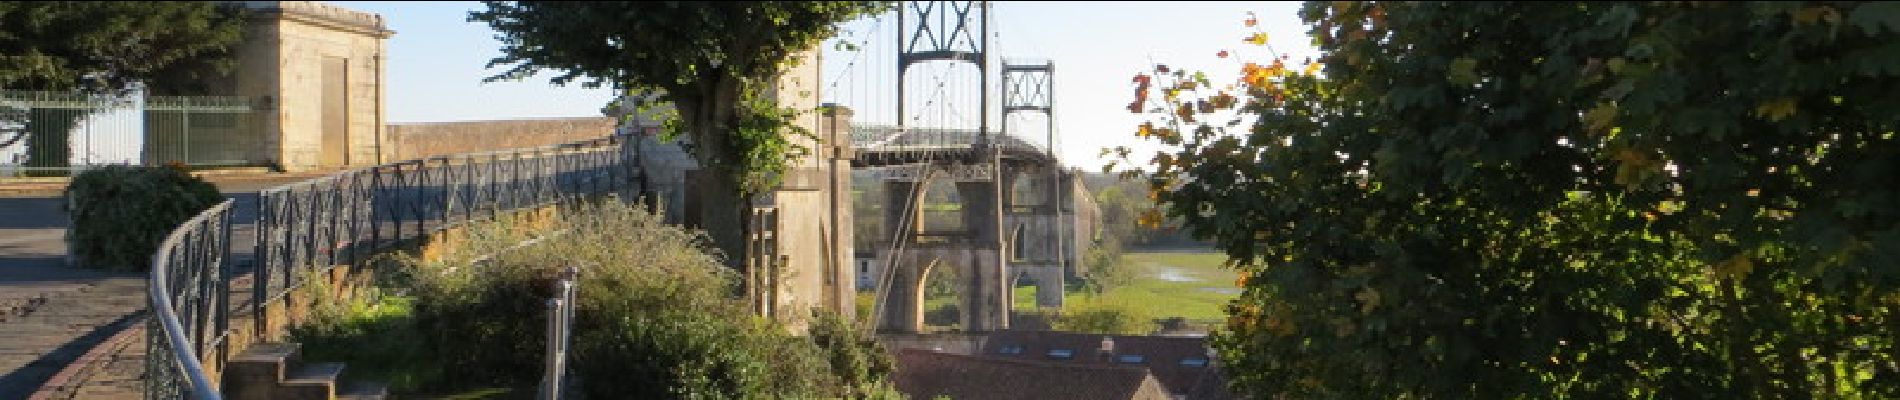 Randonnée Vélo Rochefort - Les ponts rochefortais - Rochefort - Photo